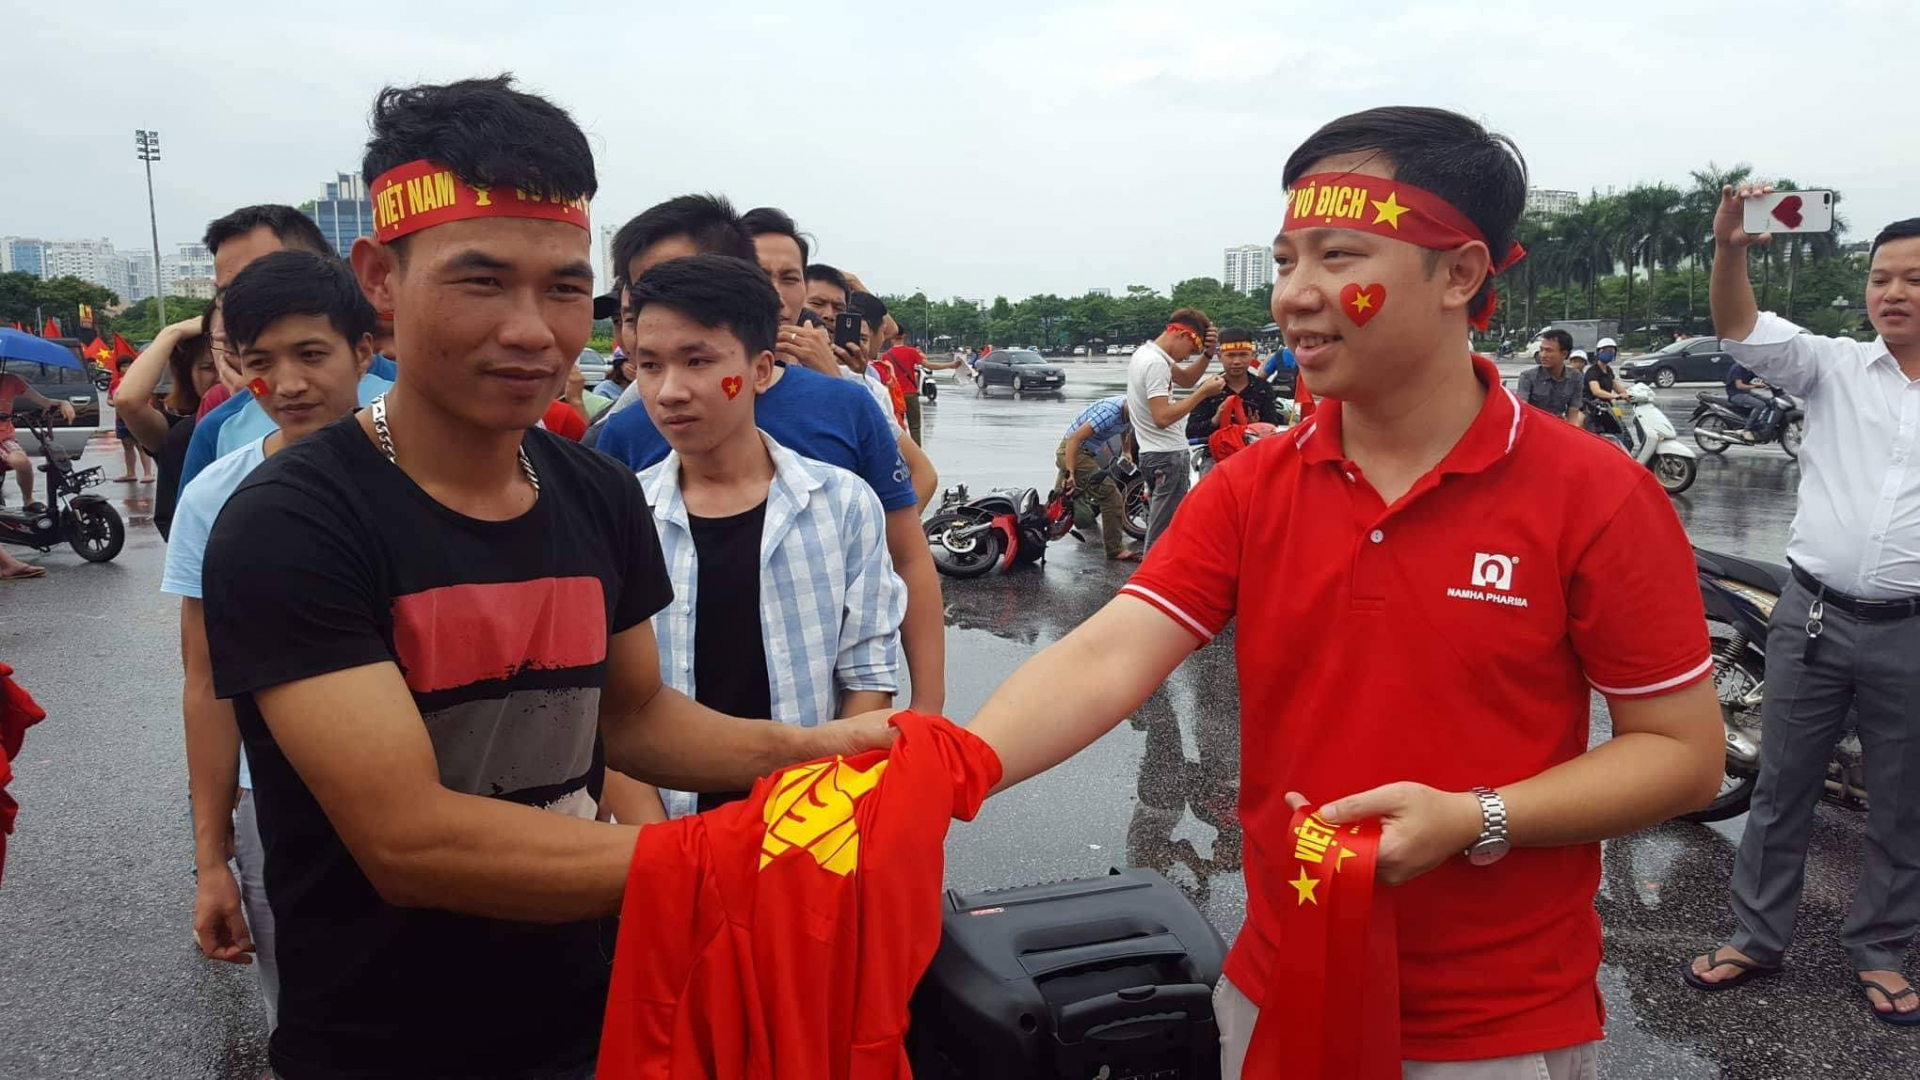 Mặc dù trời mưa khá nặng hạt nhưng tại khu vực trước sân vận động Mỹ Đình, nhiều người hâm mộ vẫn xếp hàng nhận áo tặng cổ vũ đội tuyển Việt Nam của Cty dược phẩm Nam Hà